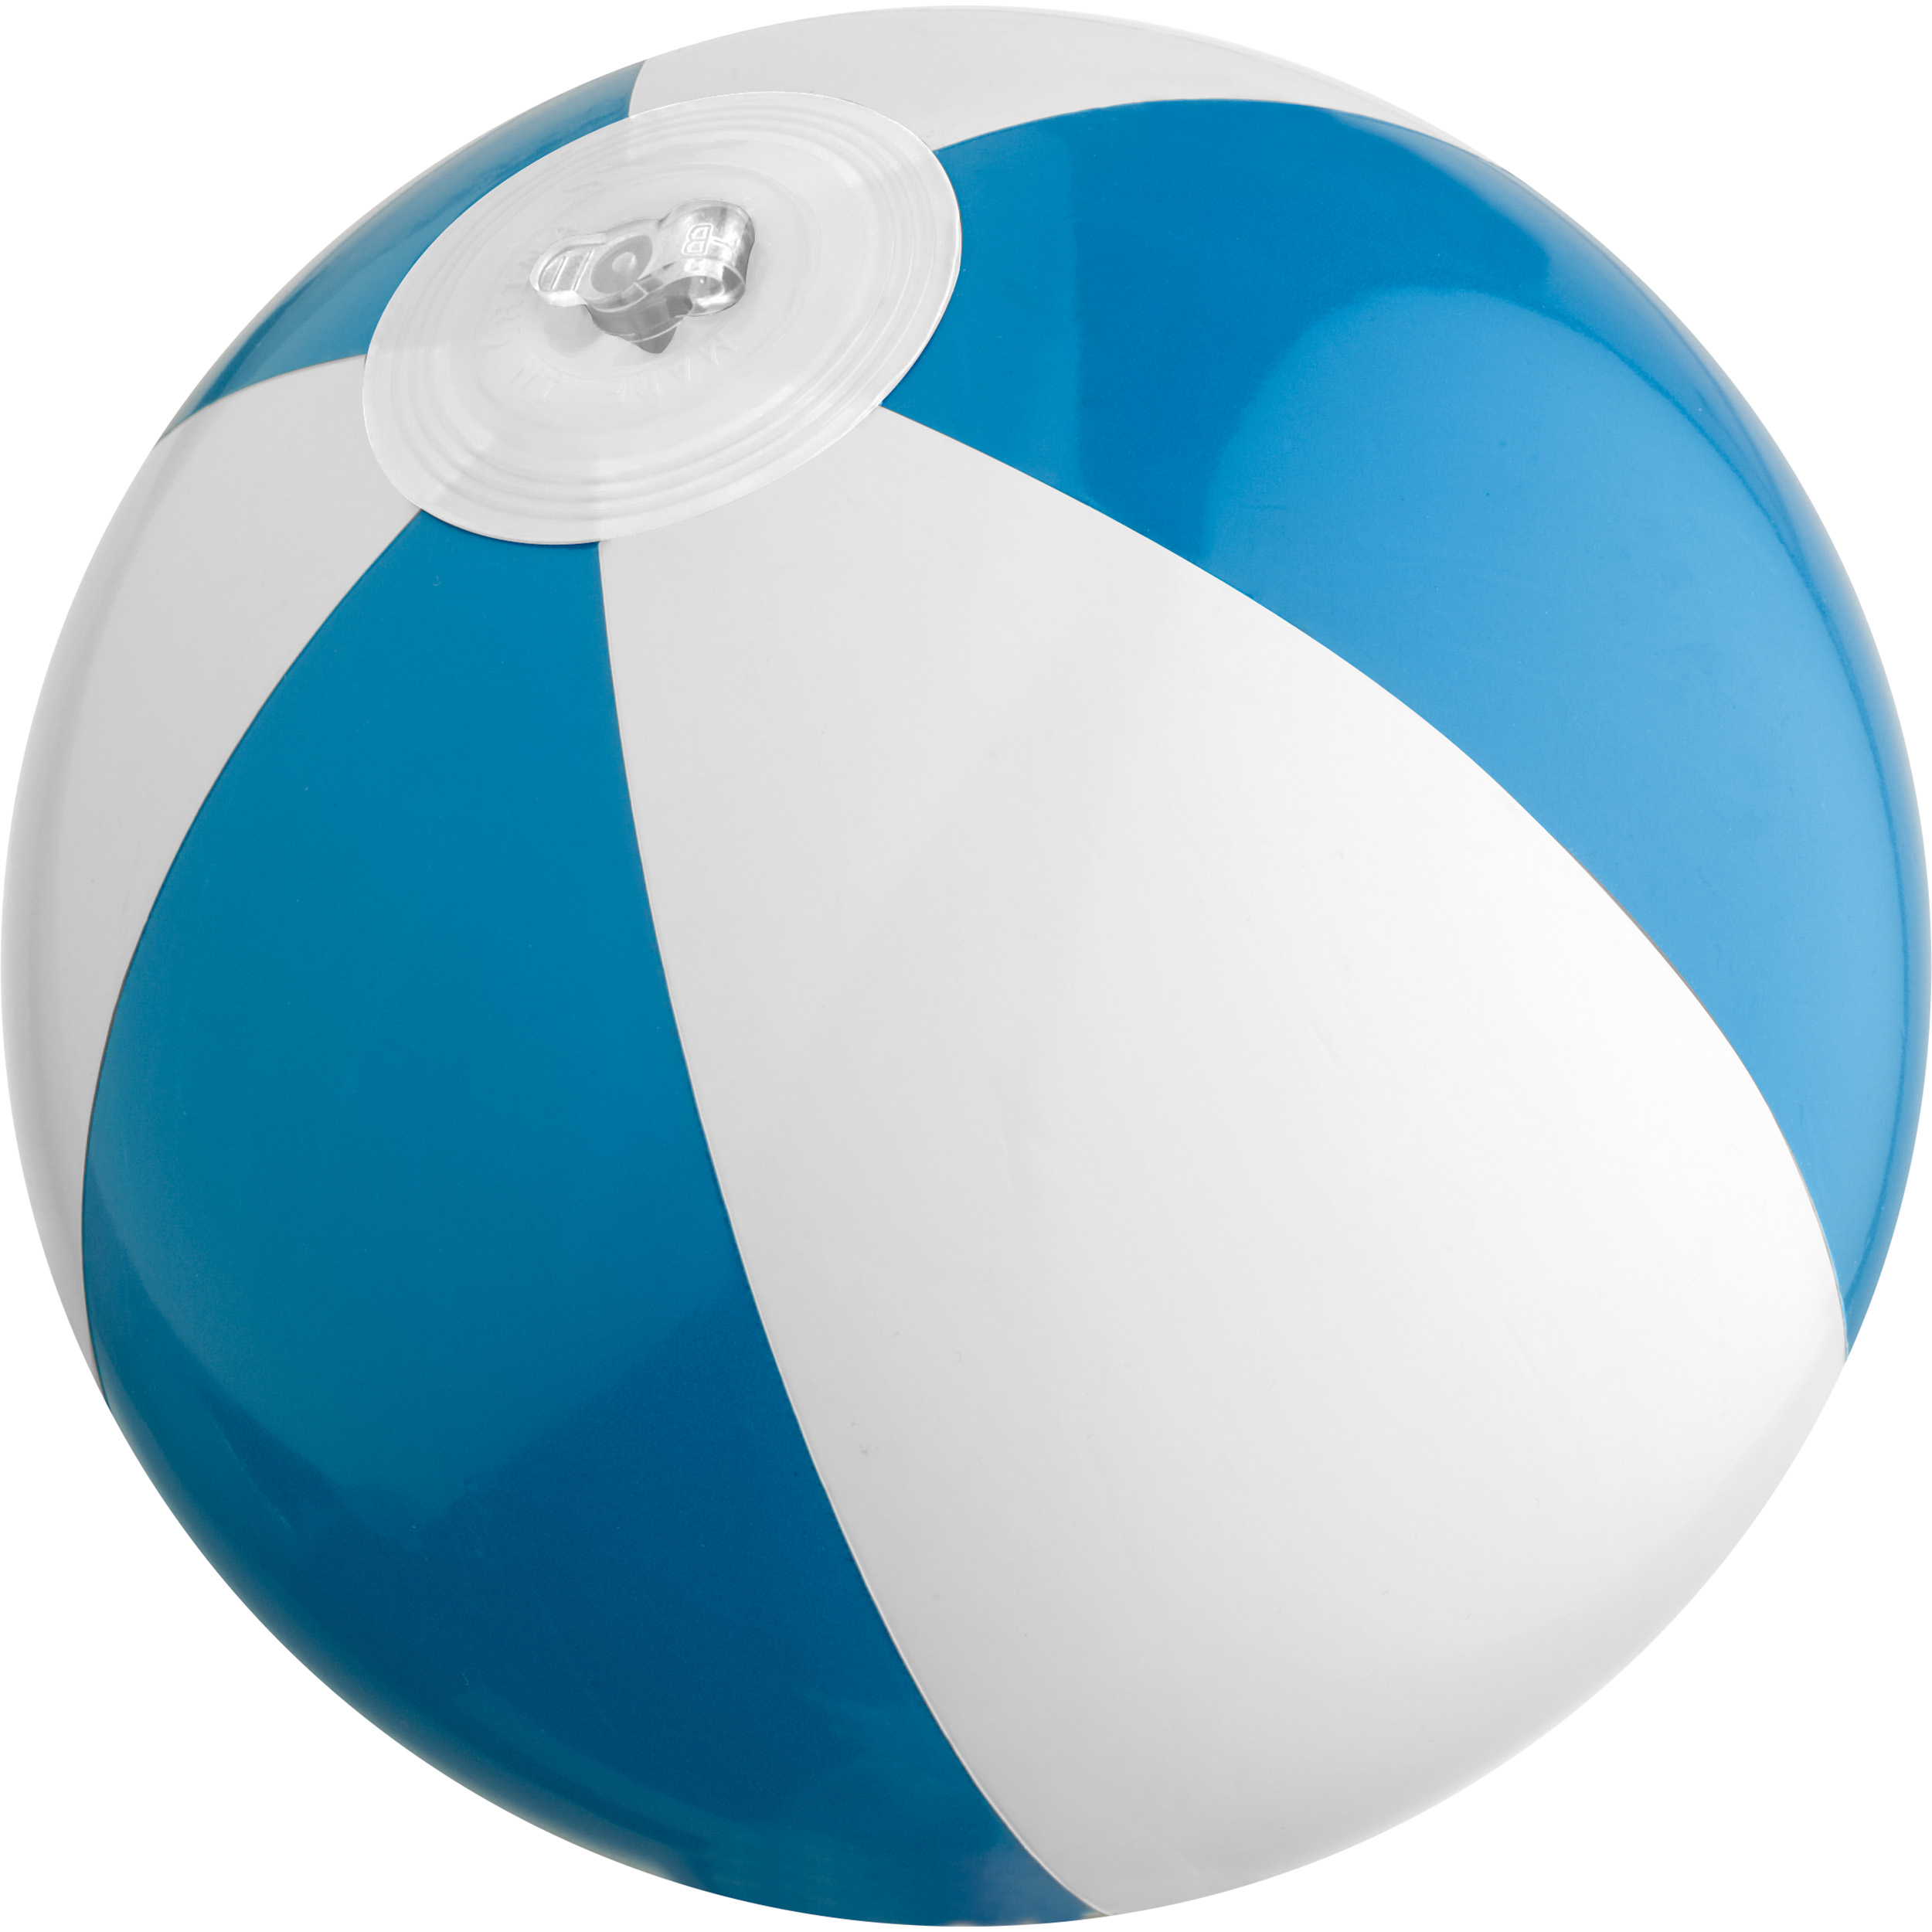 Ballon de Plage avec Logo - Durbuy - Zaprinta France